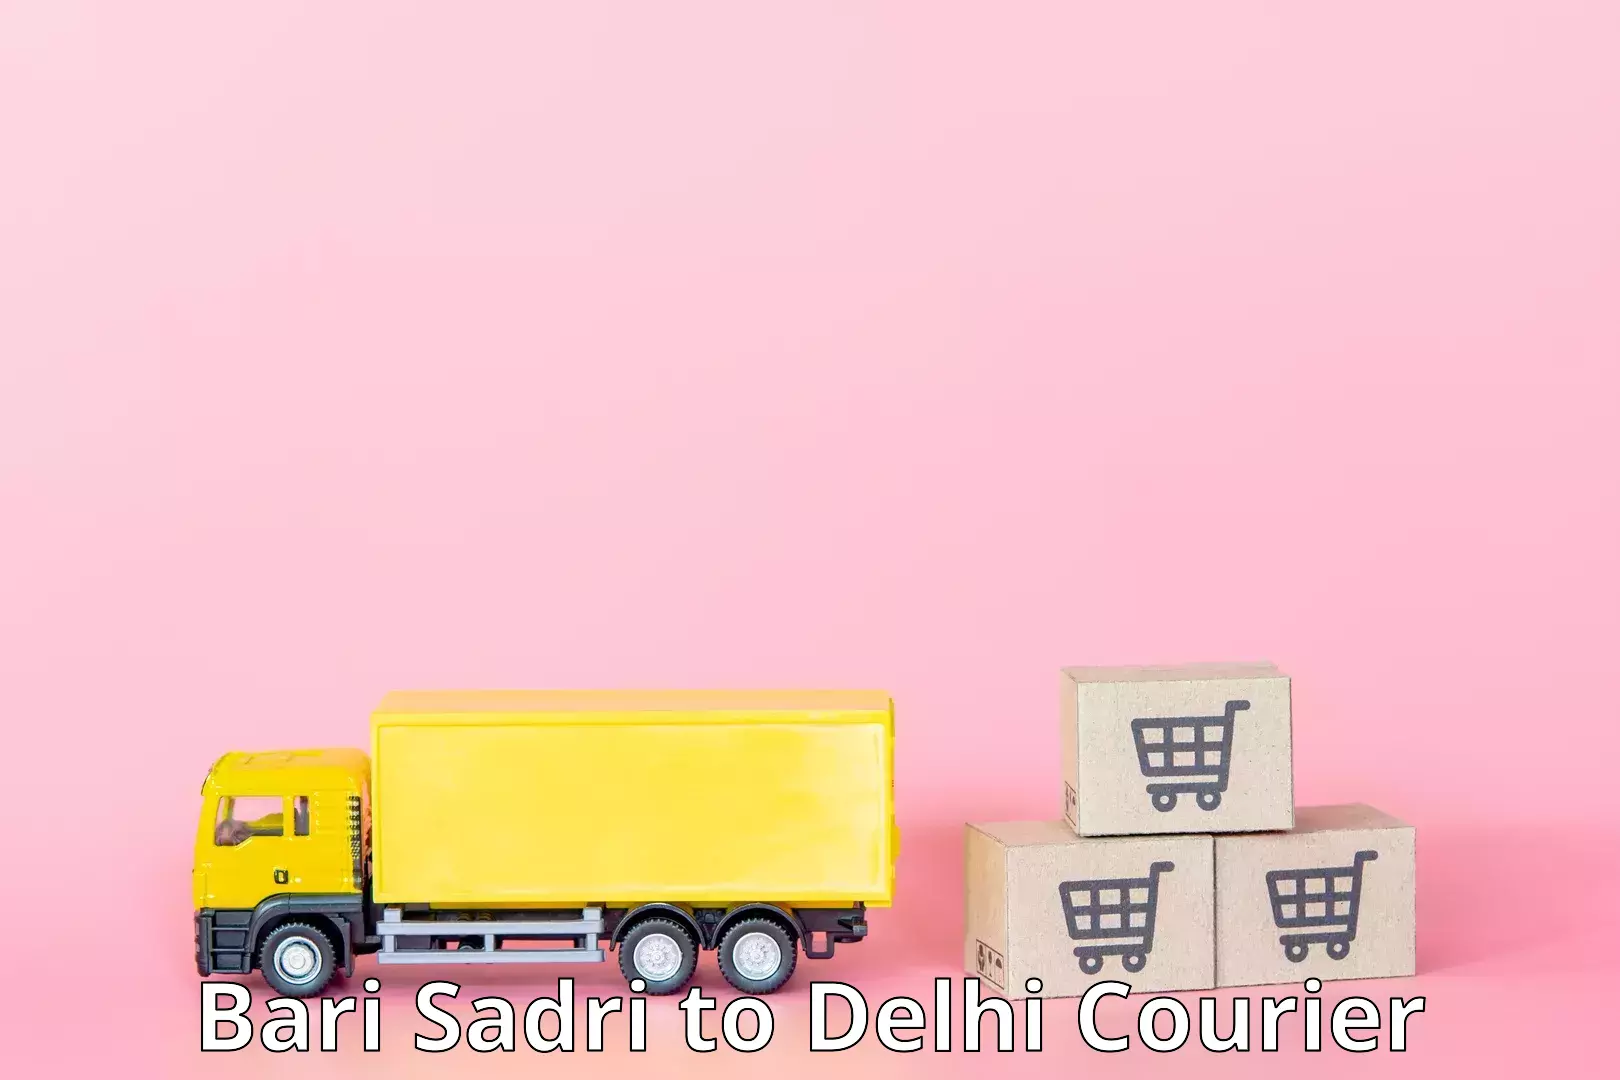 Personalized courier solutions Bari Sadri to Delhi